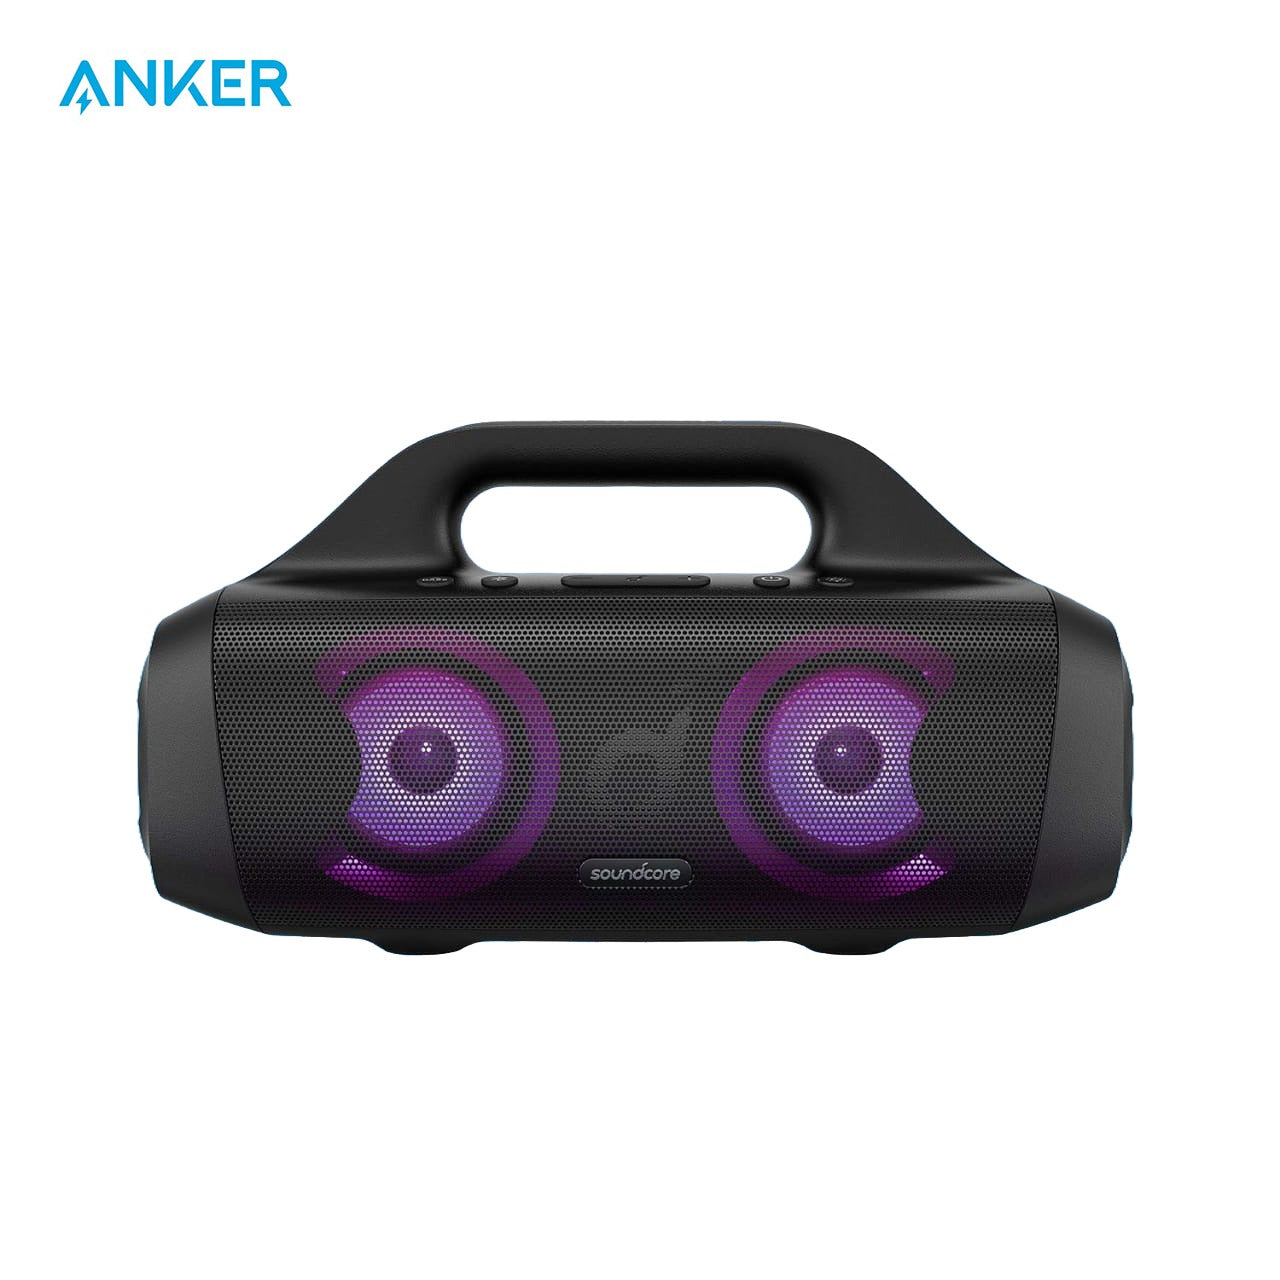 ANKER Soundcore SELECT PRO Portable Waterproof Speaker.